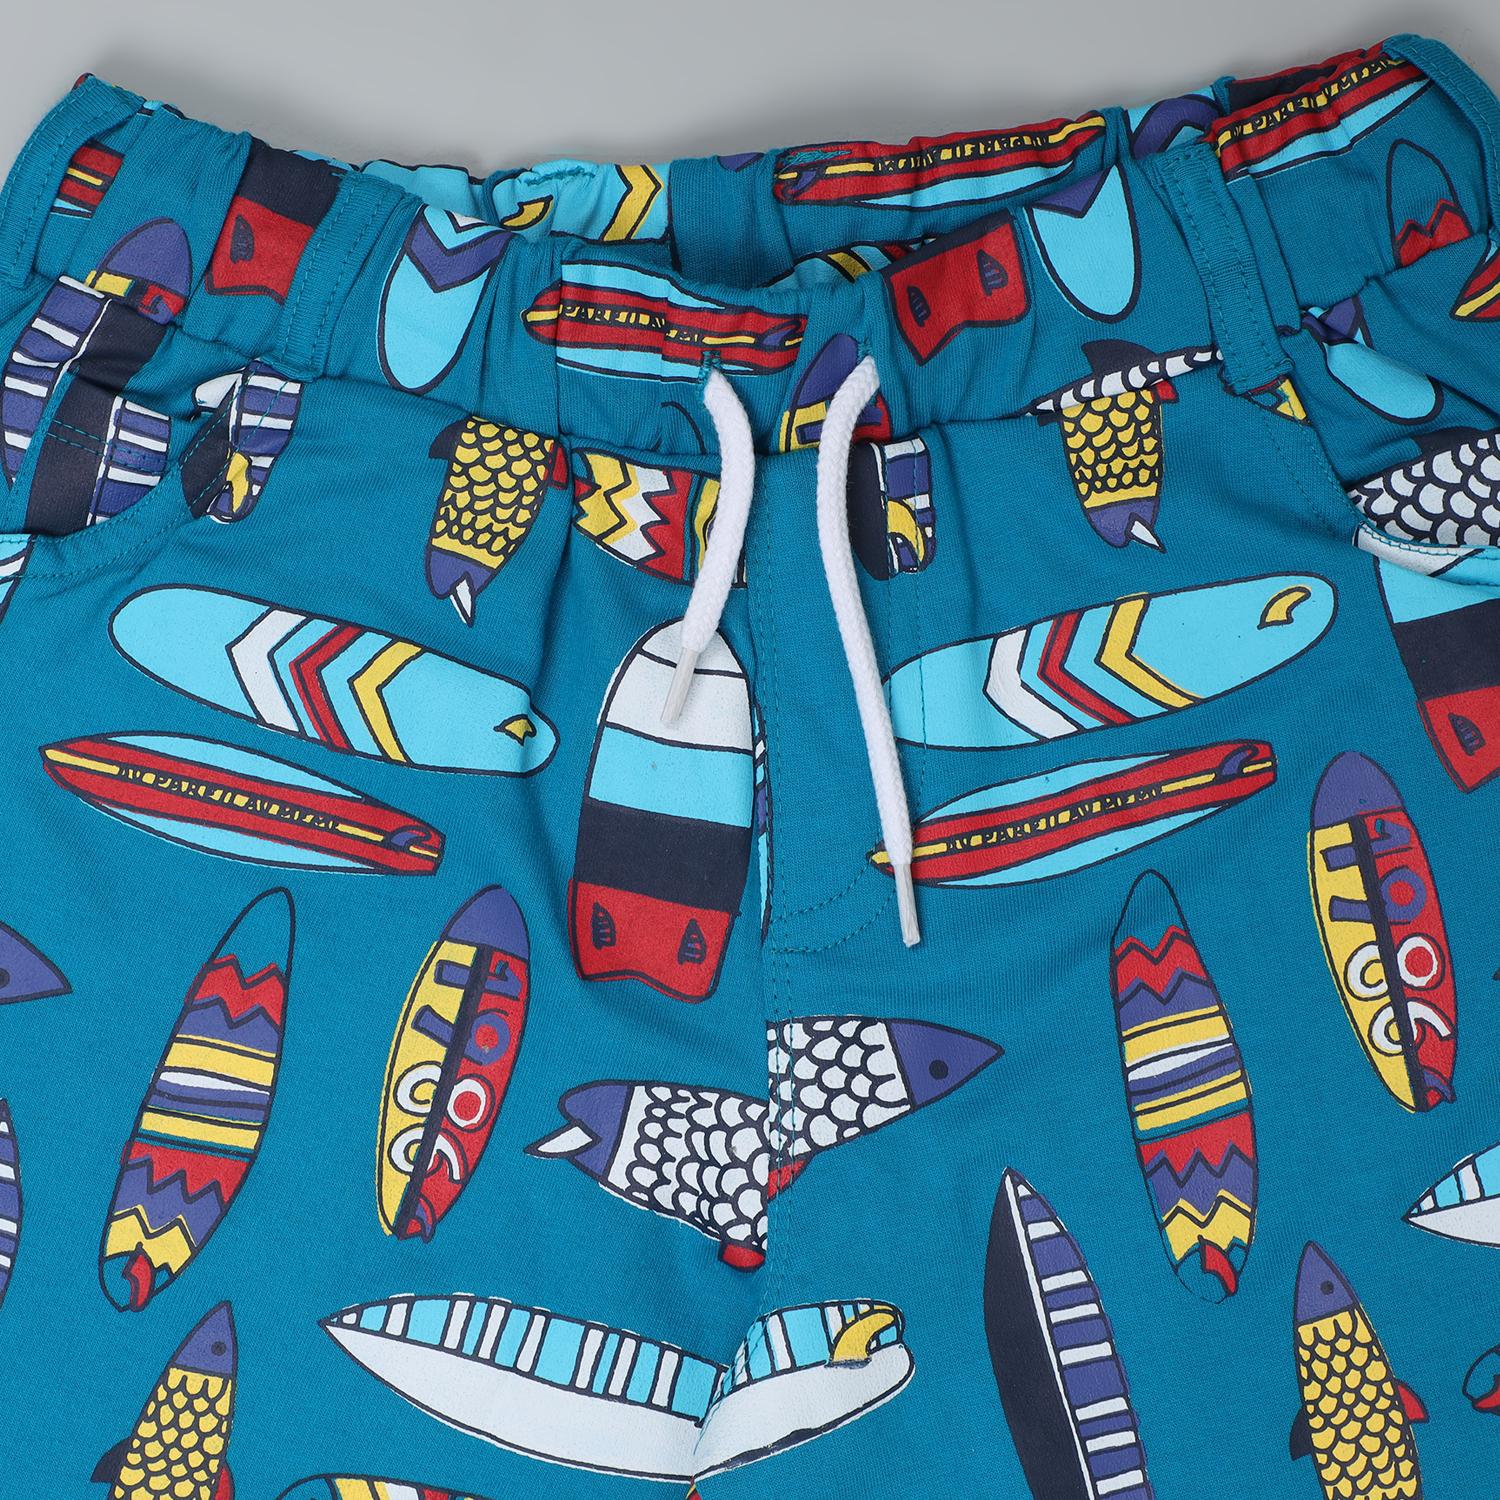 Clothing Boys Pattern Shorts-Turquoise & Sky Blue